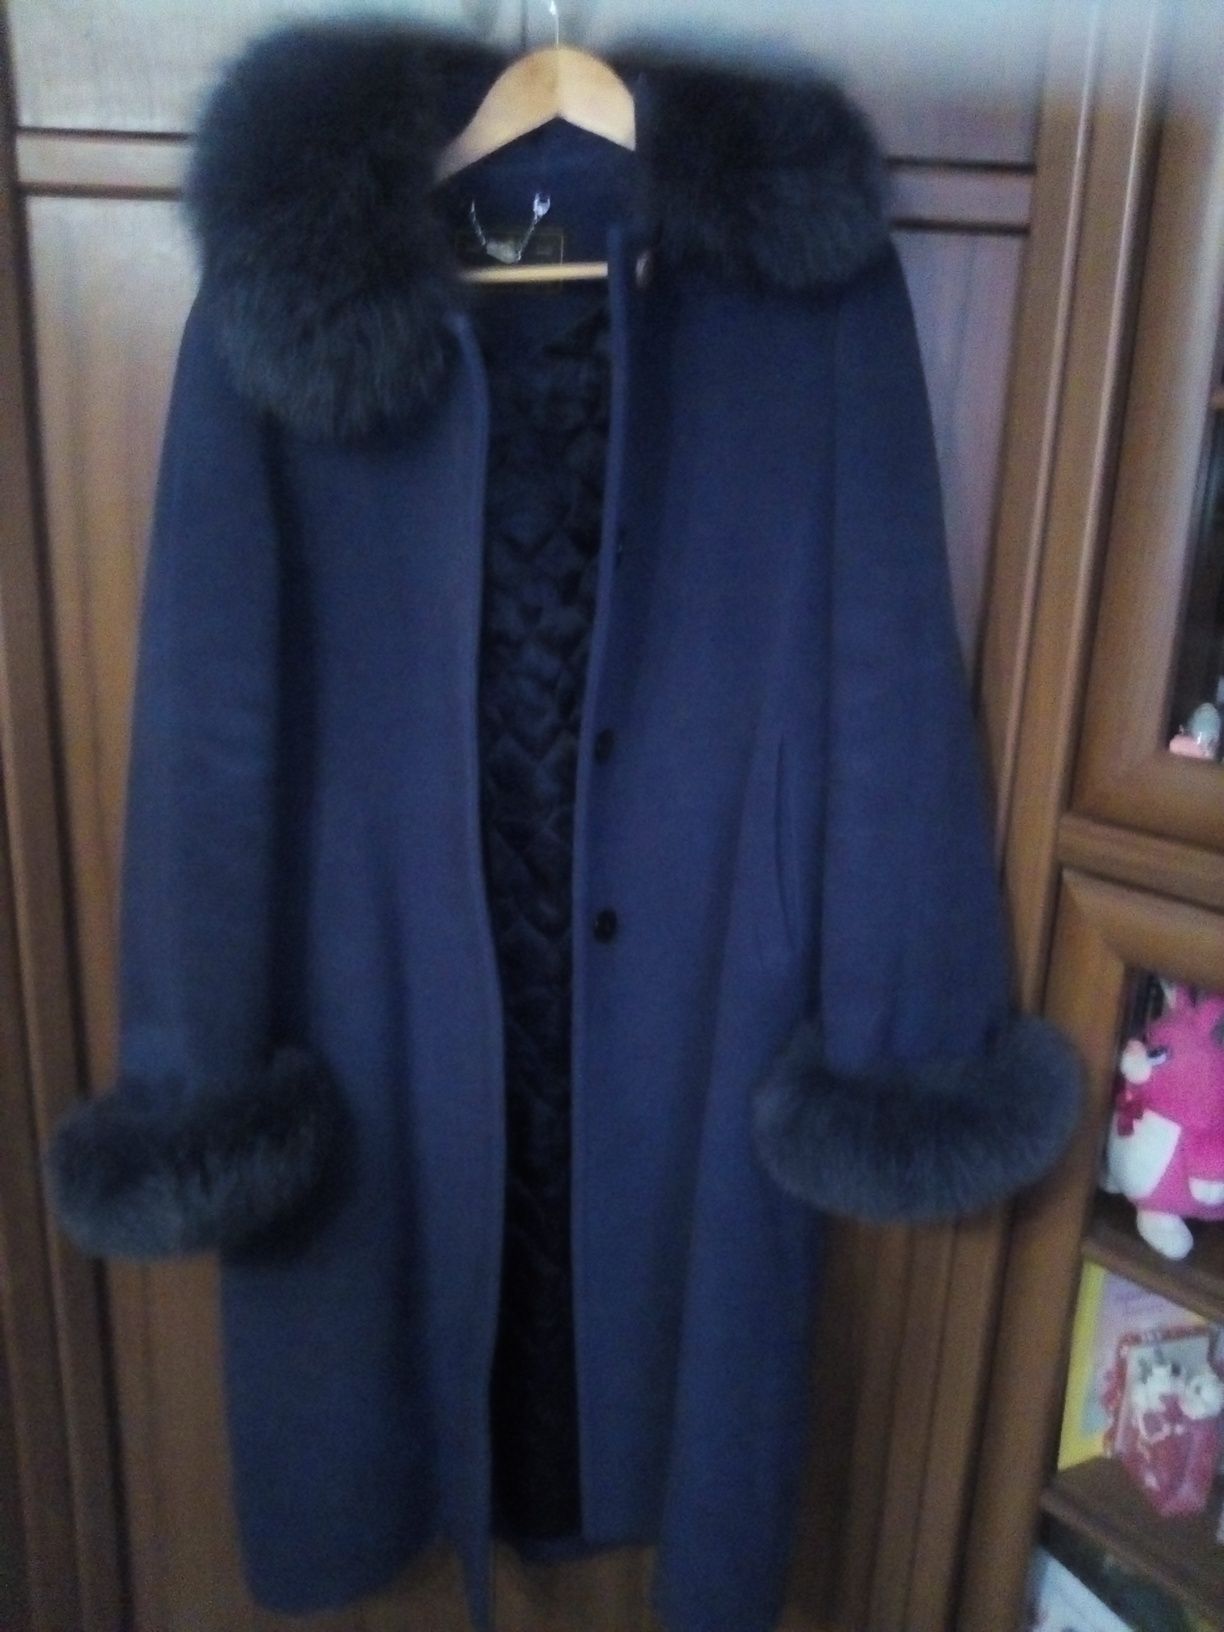 Зимове кашемірове пальто